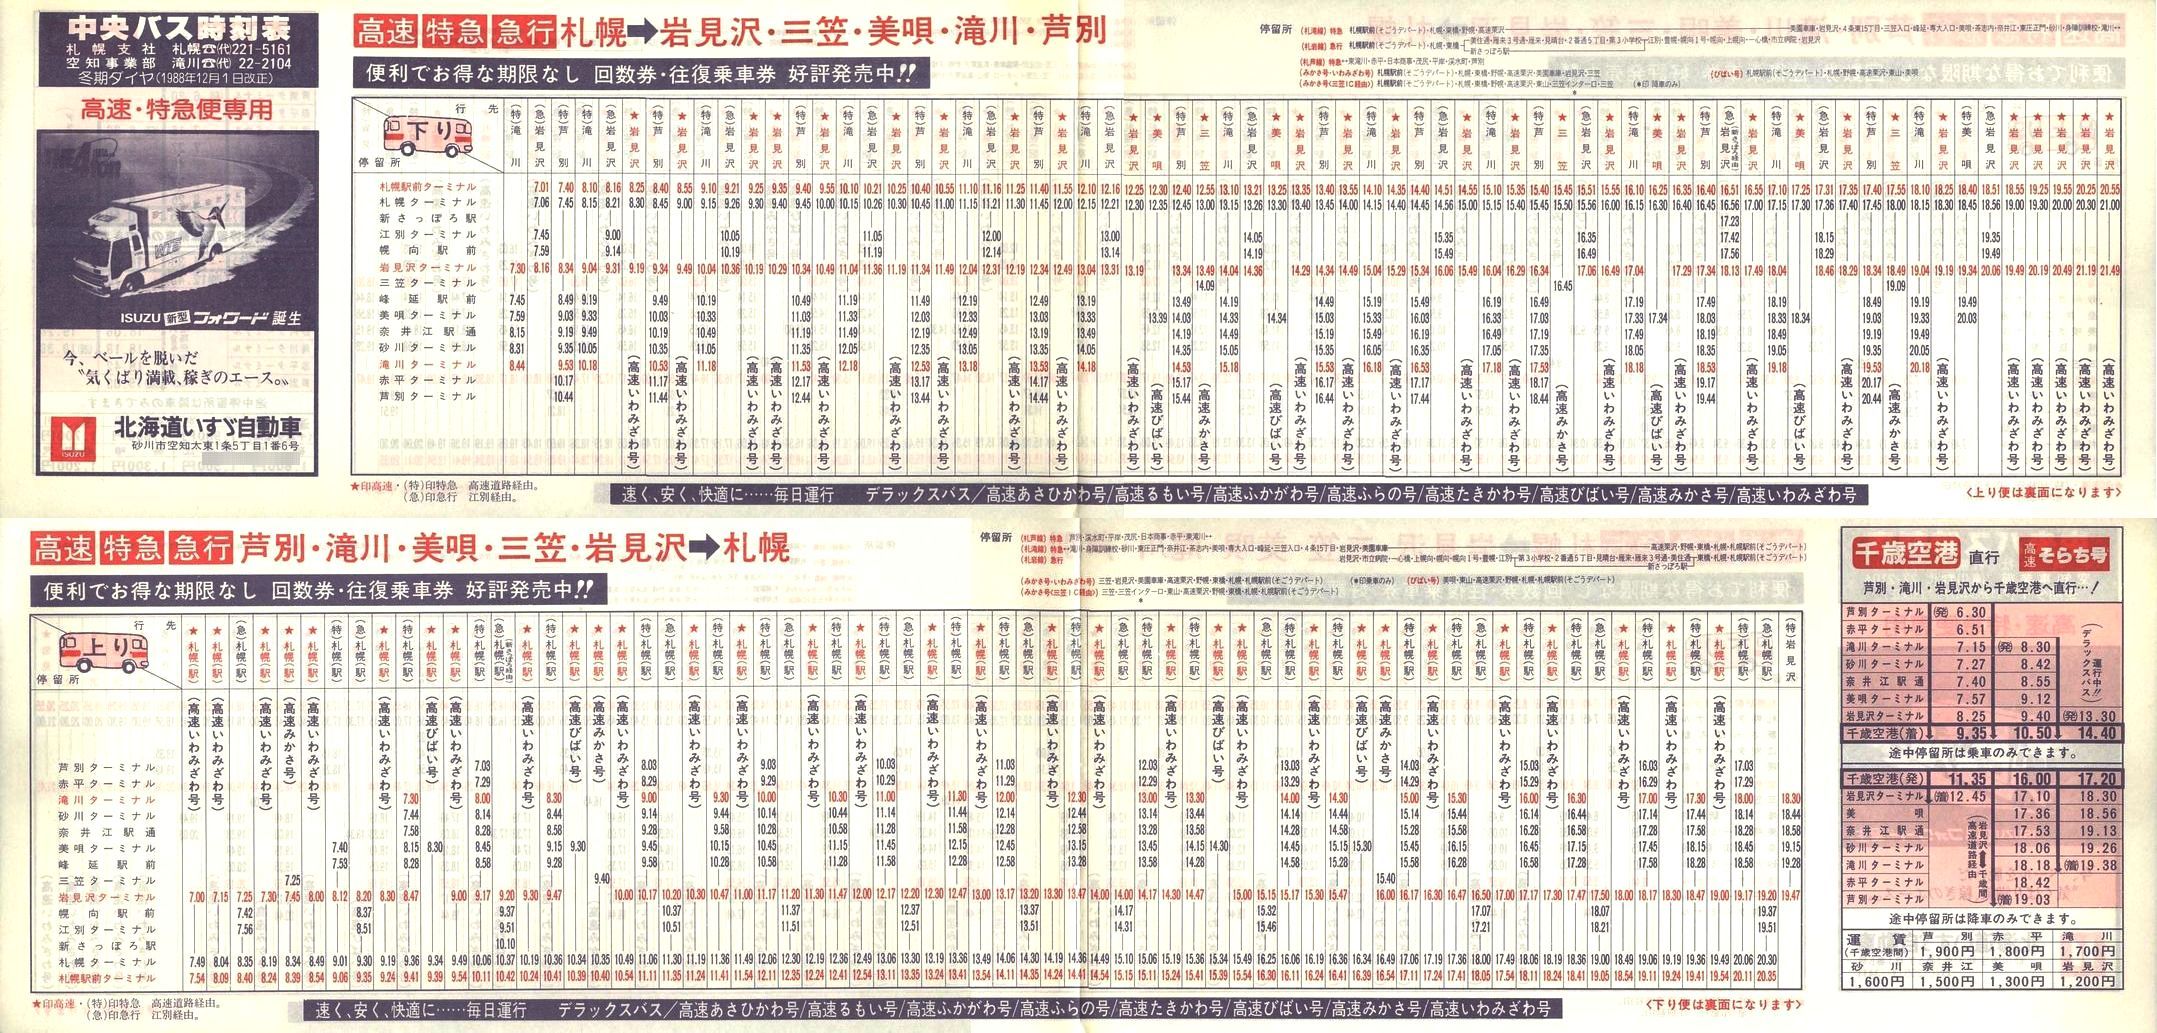 1988-12-01改正_北海道中央バス(空知)_高速特急便時刻表